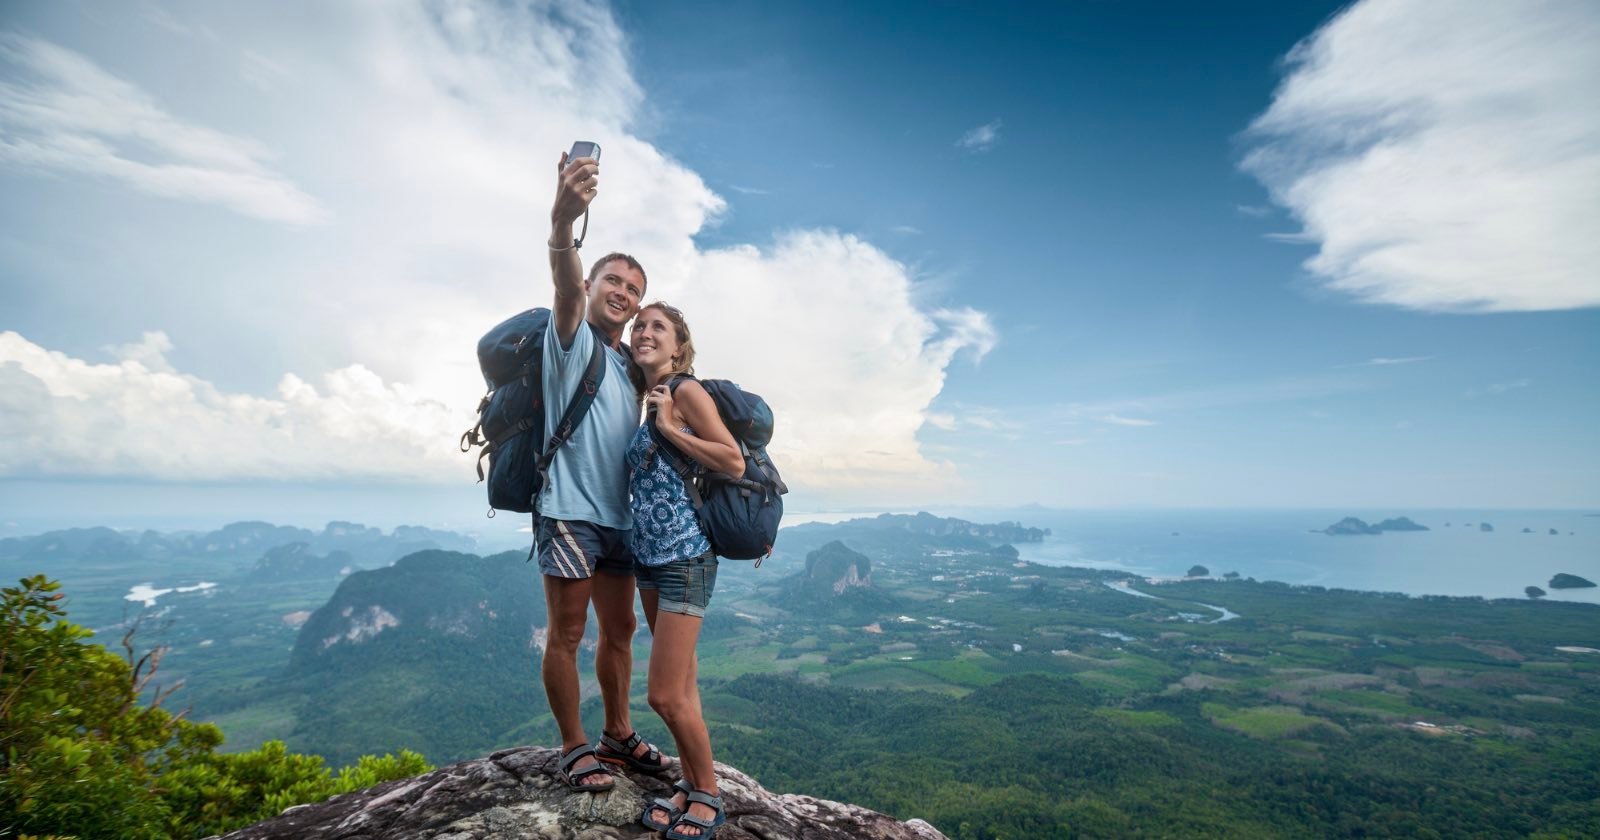 selfie death study cliffs problem public health